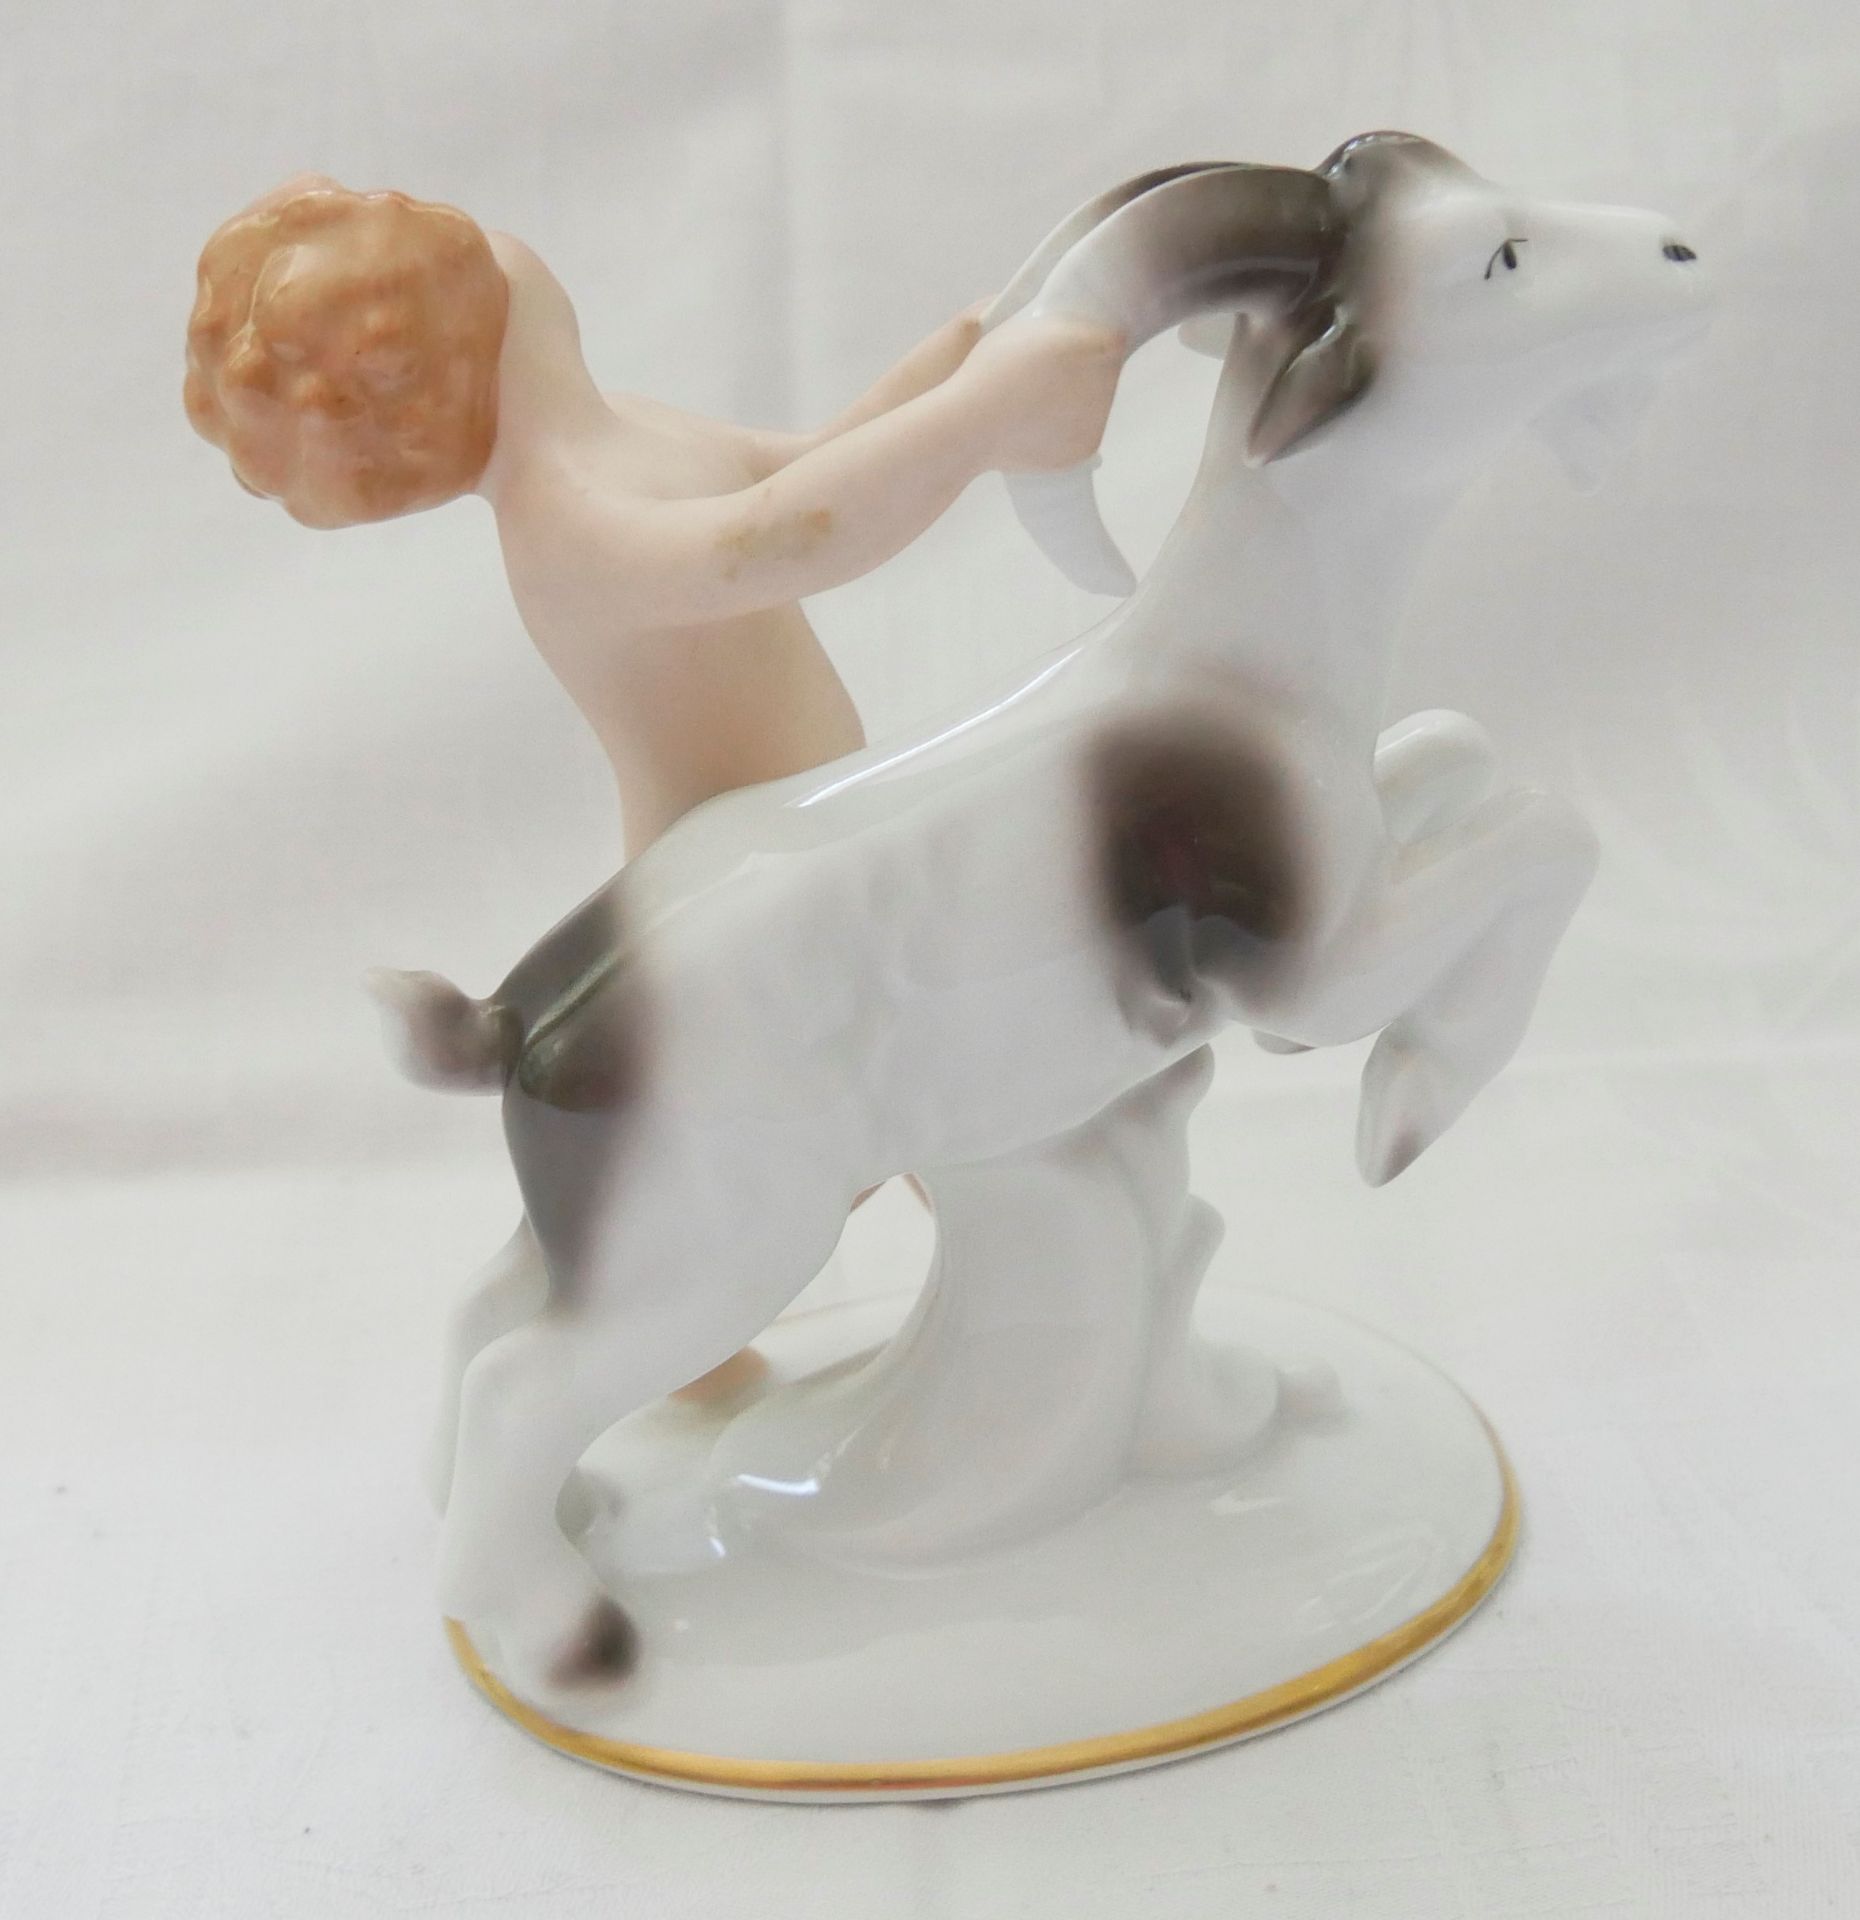 Gerold Porzellan-Figur "Putto mit Ziege", am Boden gemarkt. Höhe ca. 14,5 cm - Bild 3 aus 4